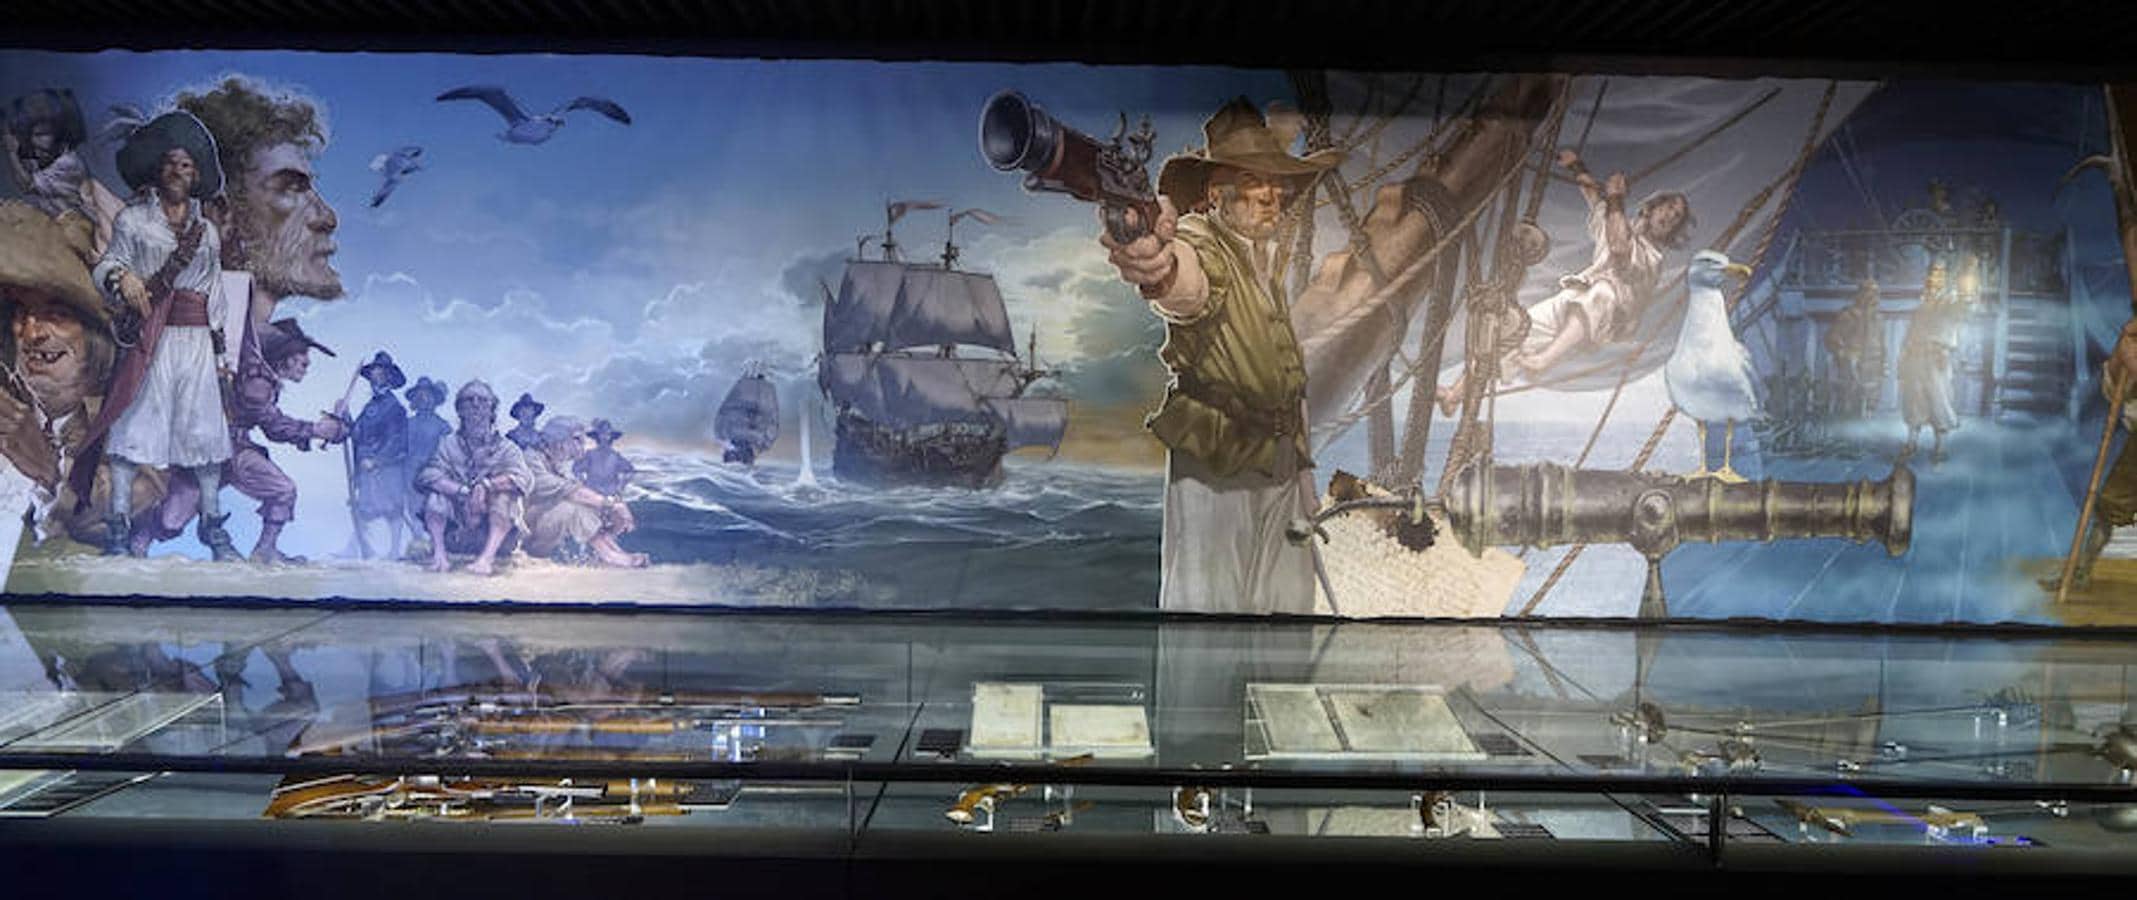 Exposición que refleja la vida pirata de marineros guipuzcoanos